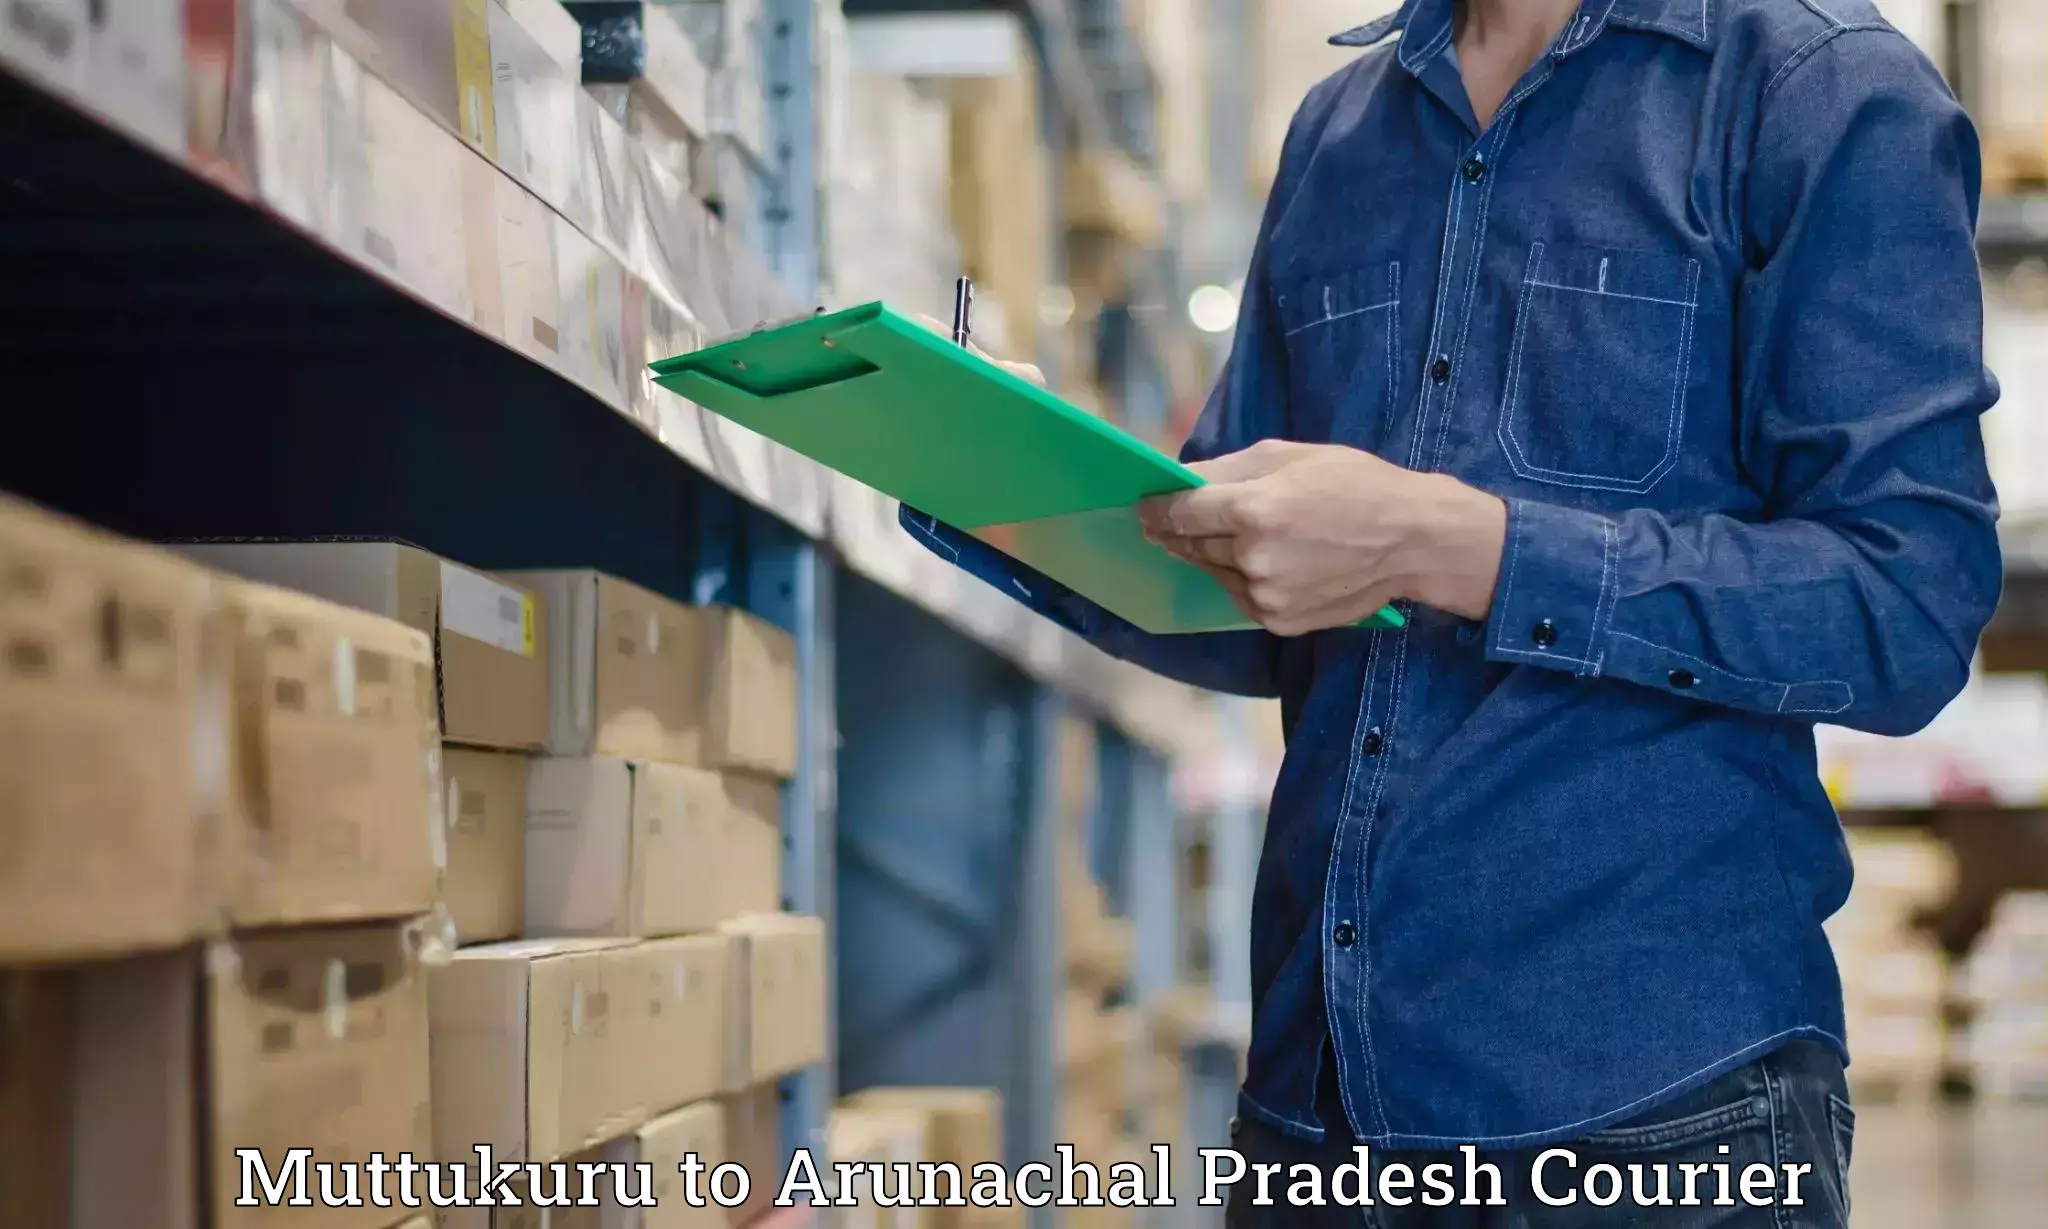 Quick courier services Muttukuru to Arunachal Pradesh